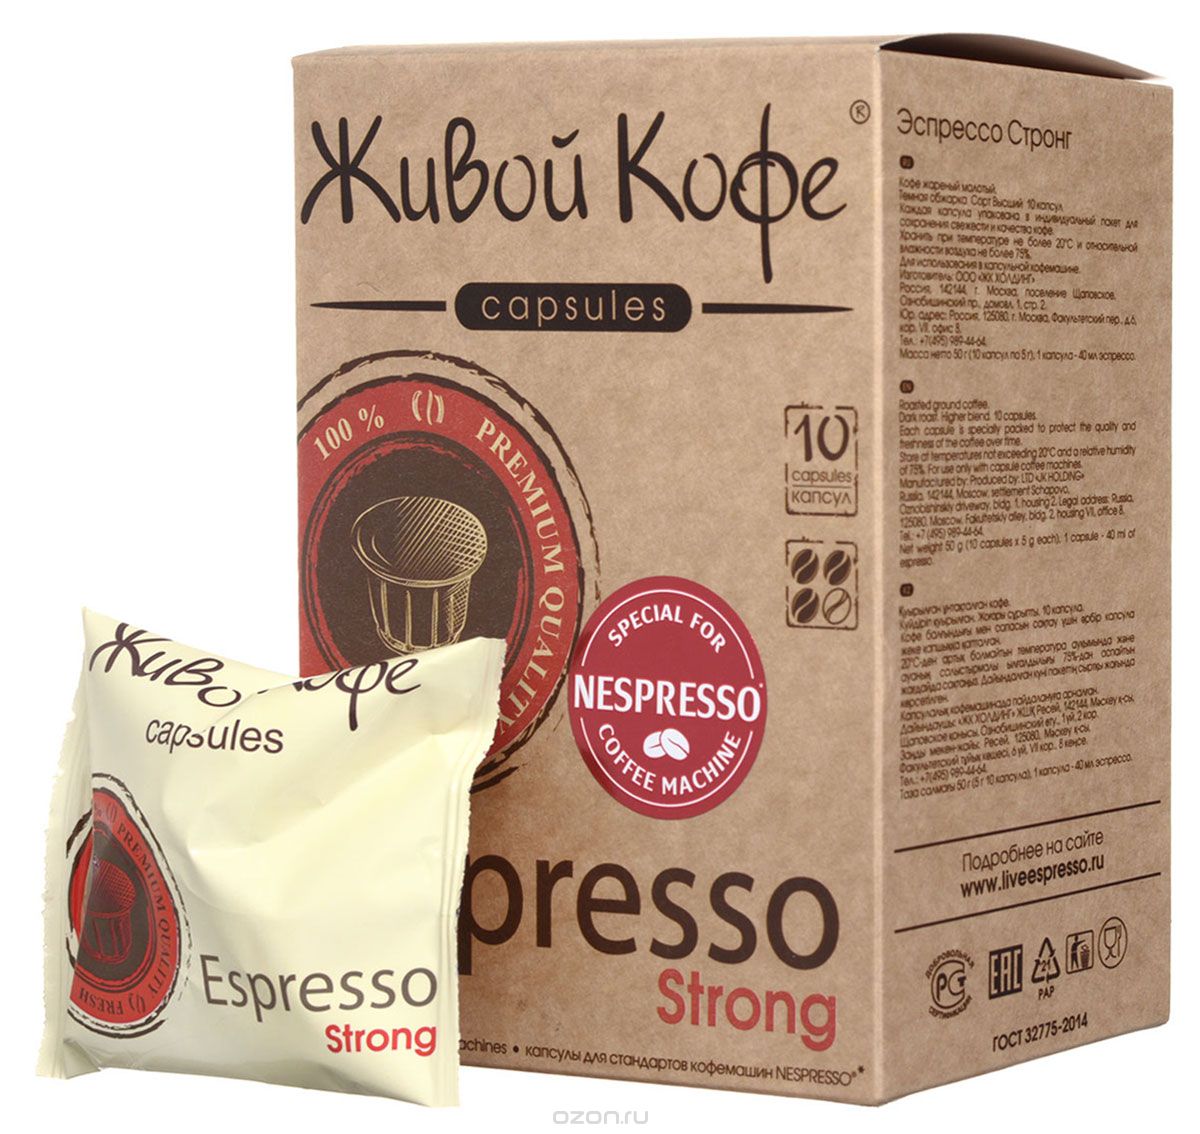   Espresso Strong    ( ), 10 